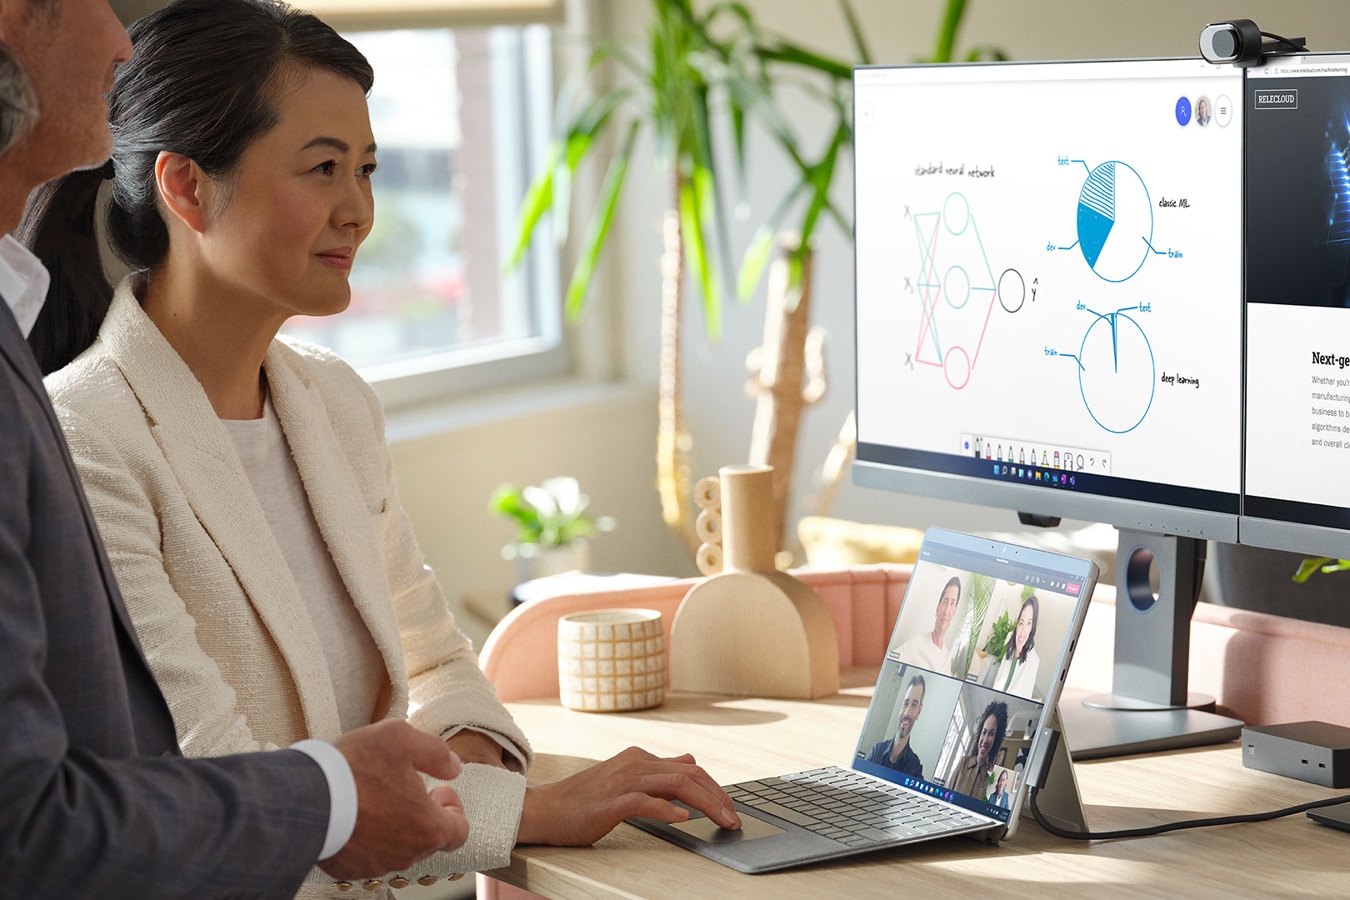 Muž a žena v kancelářském se pomocí zařízení Surface připojeného ke dvěma externím monitorům účastní schůzky přes Microsoft Teams